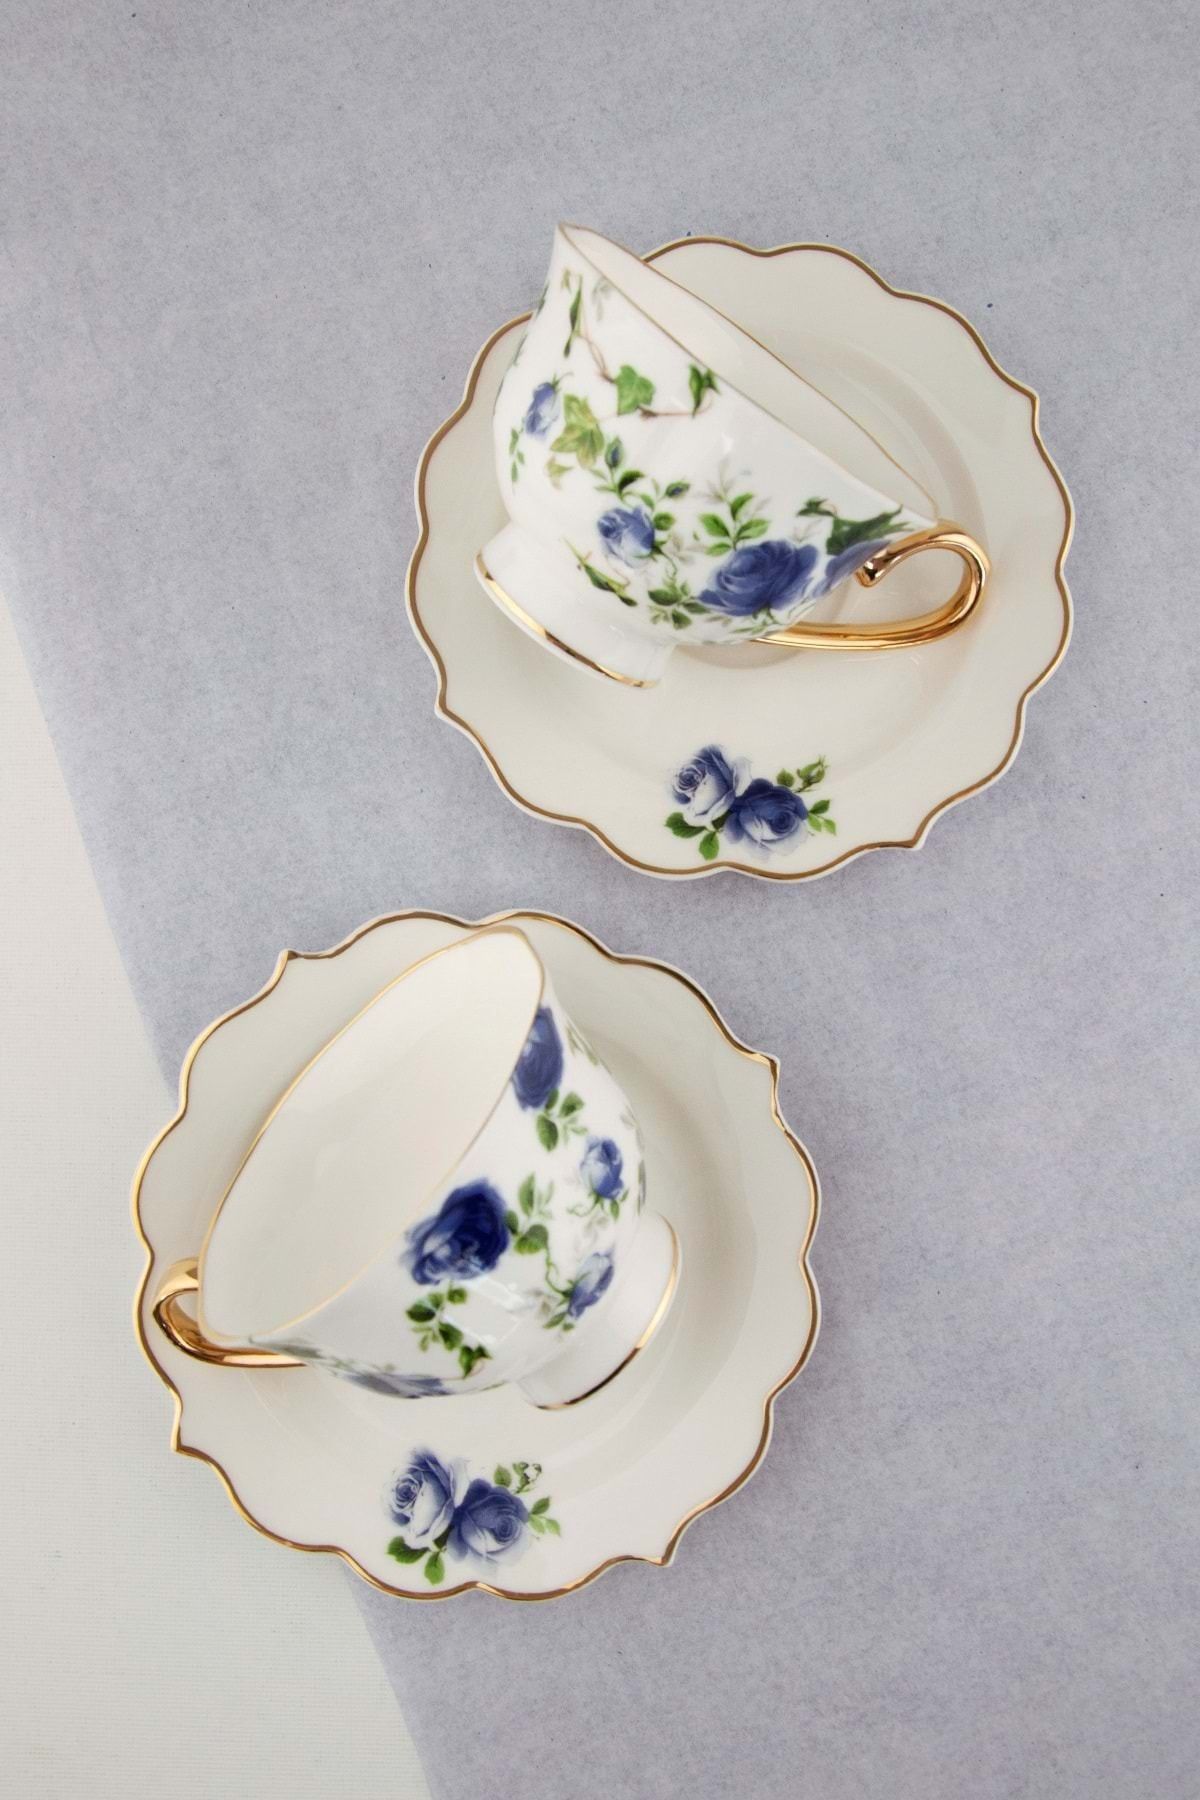 Bursa Porselen Dekor Blue ivy rose altın yaldızlı iki kişilik çay fincan takımı